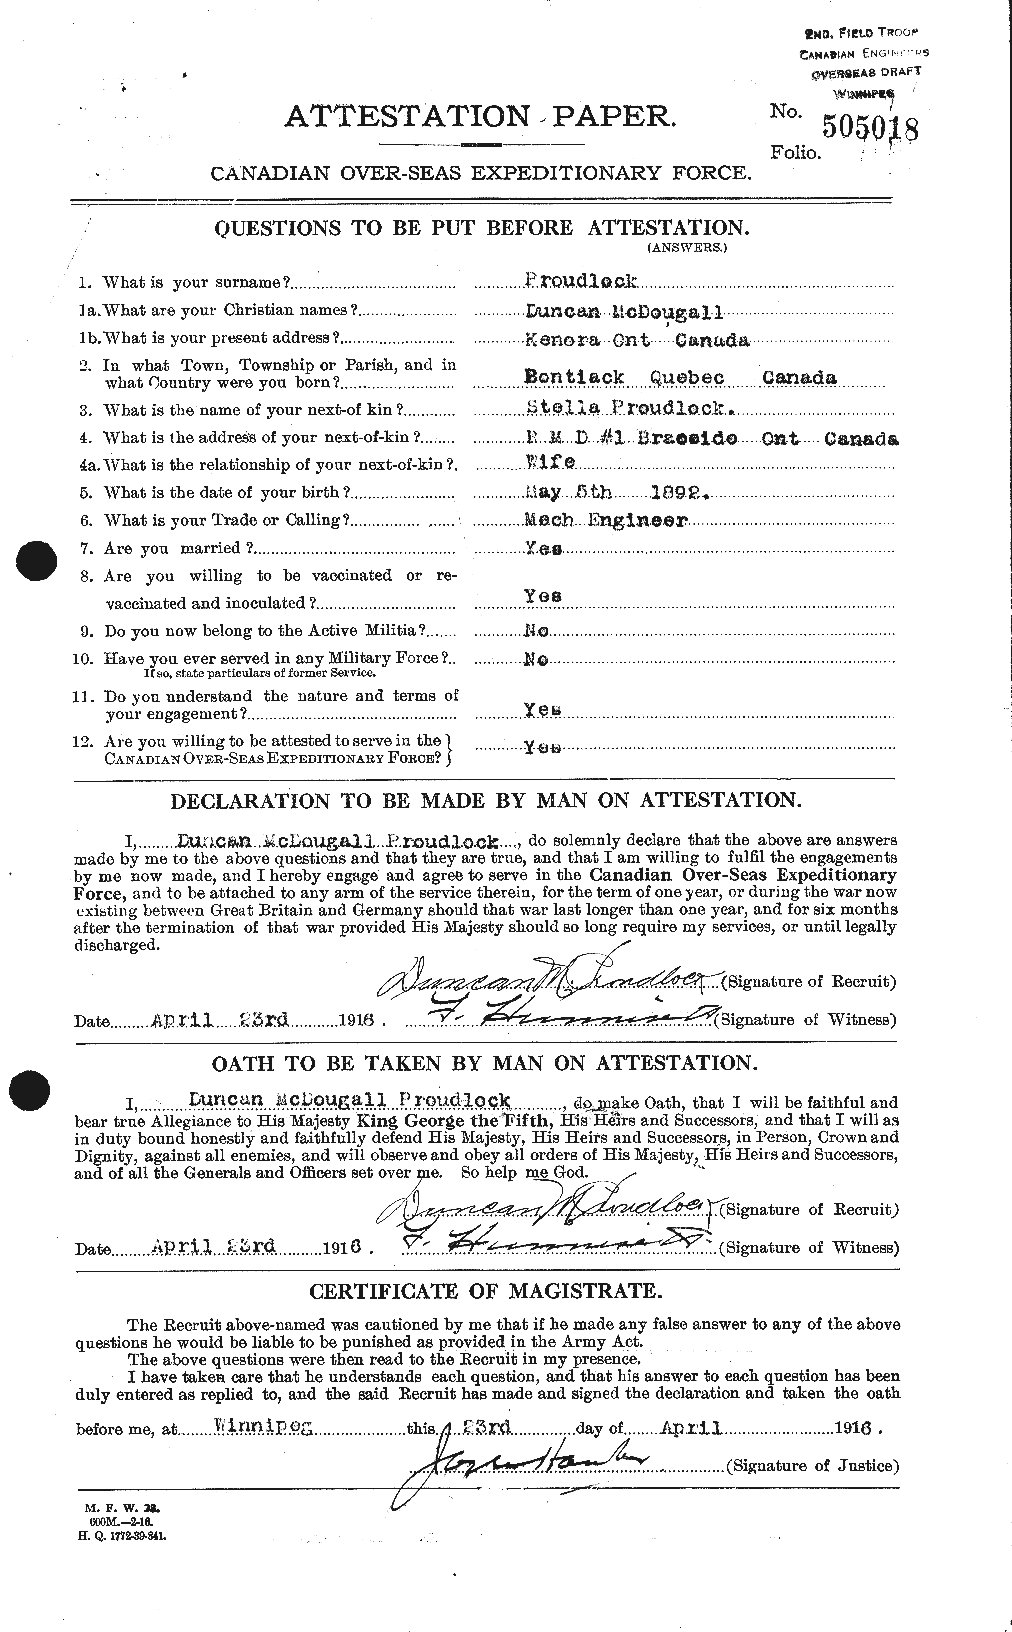 Dossiers du Personnel de la Première Guerre mondiale - CEC 591482a